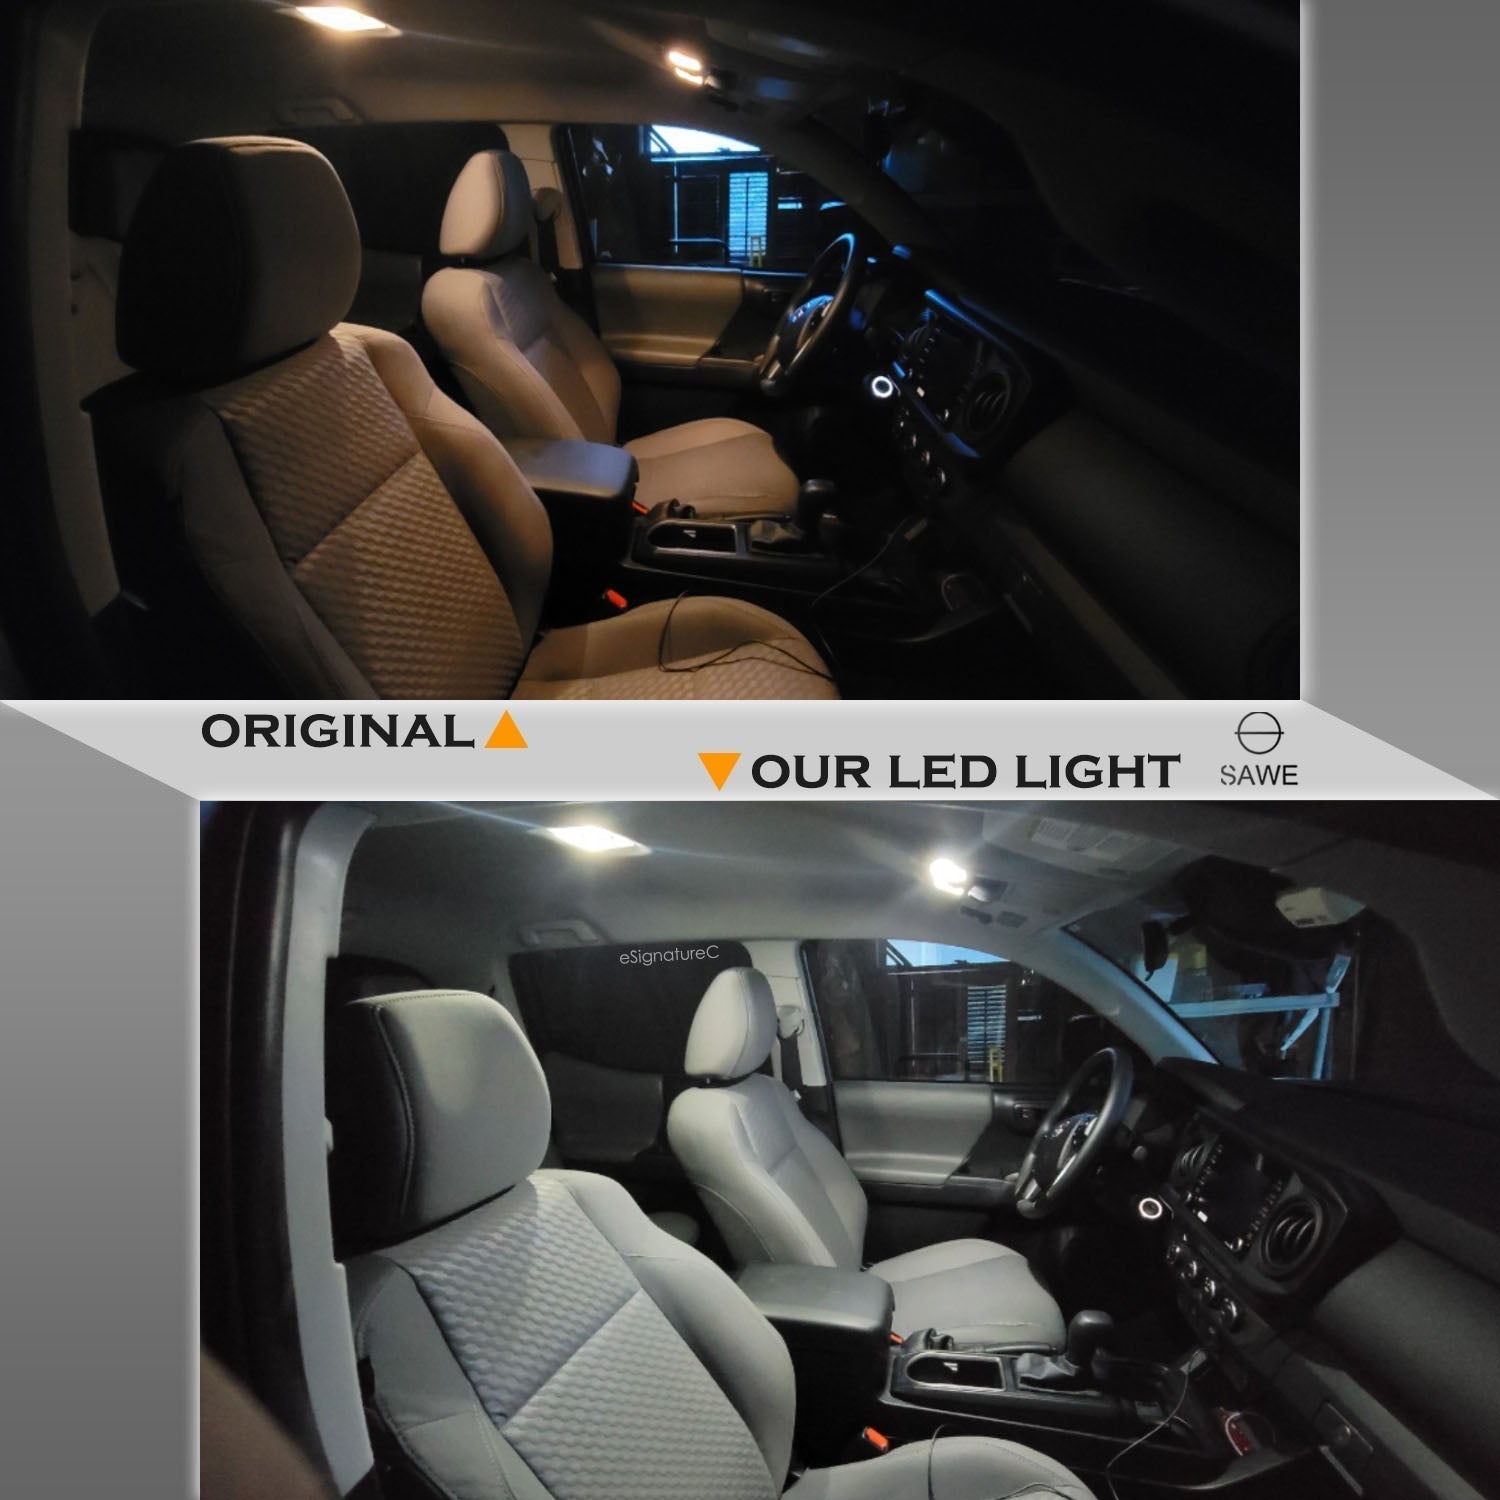 For Volkswagen Passat Interior LED Lights - Dome & Map Light Bulbs Package Kit for 2012 - 2015 - White